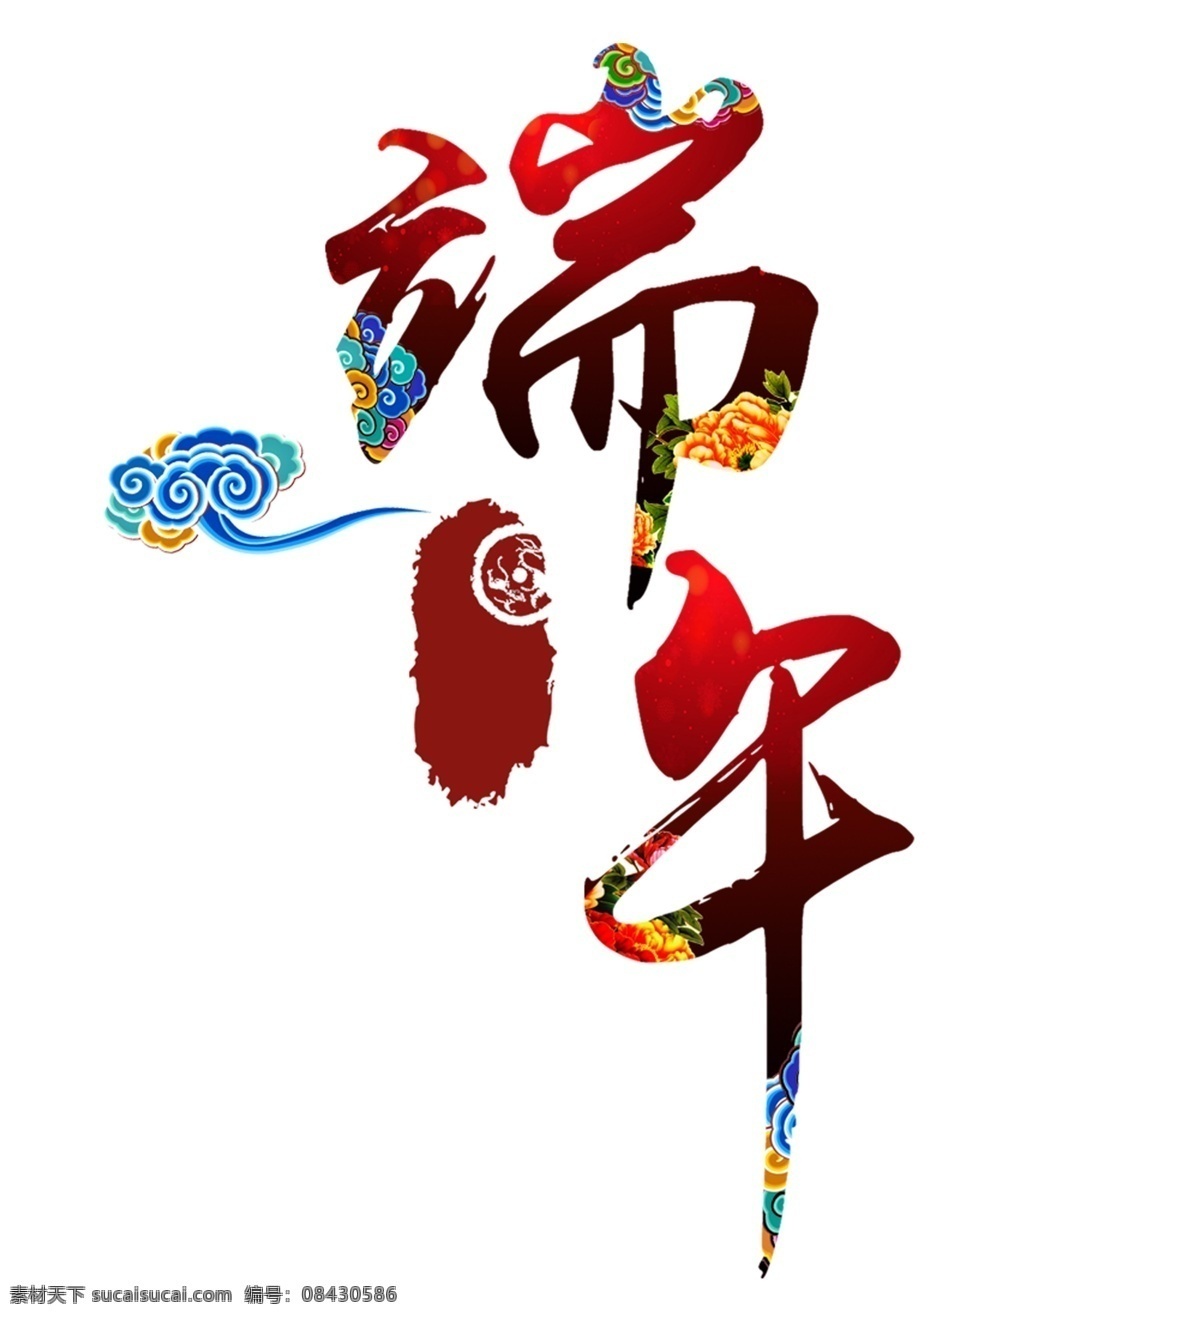 端午 粽子 节 艺术 字 端午节 字体设计 创意设计 红色 祥云 粽子节 元素 创意字体设计 中式祥云 中国传统节日